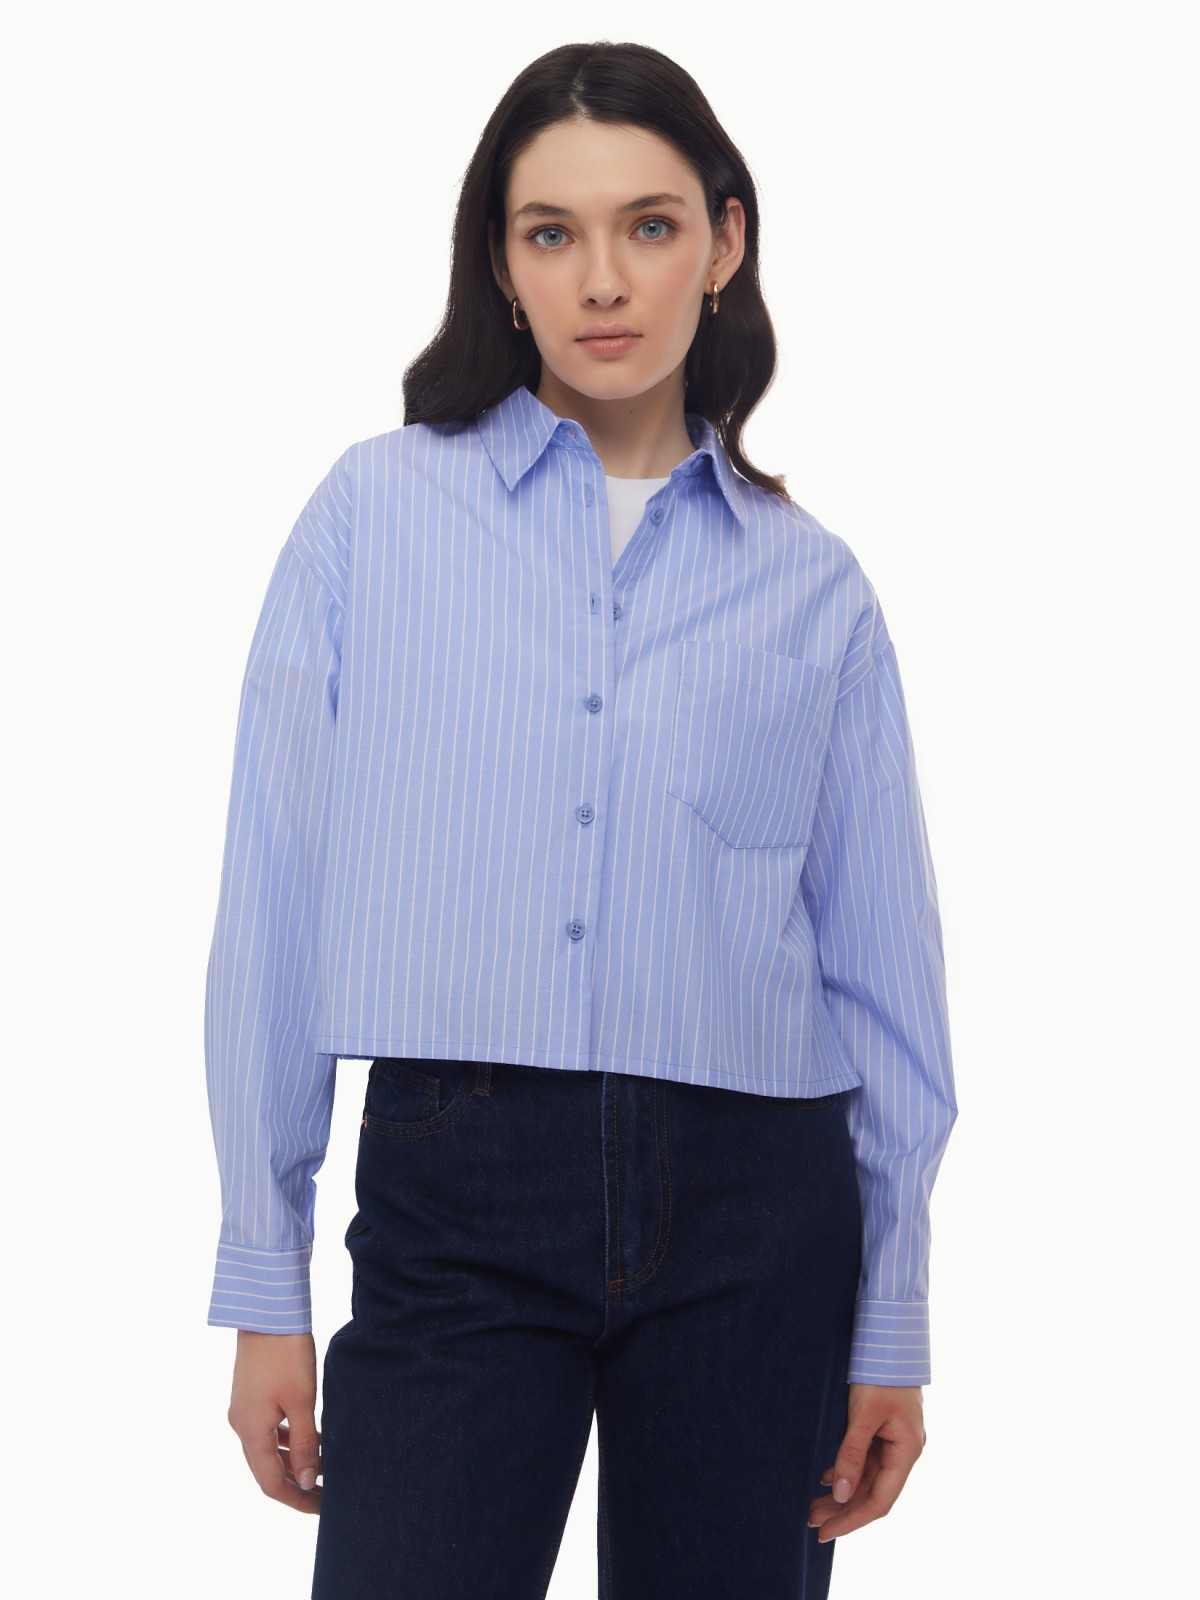 Рубашка укороченного силуэта с узором в полоску zolla 024131159163, цвет светло-голубой, размер XS - фото 1